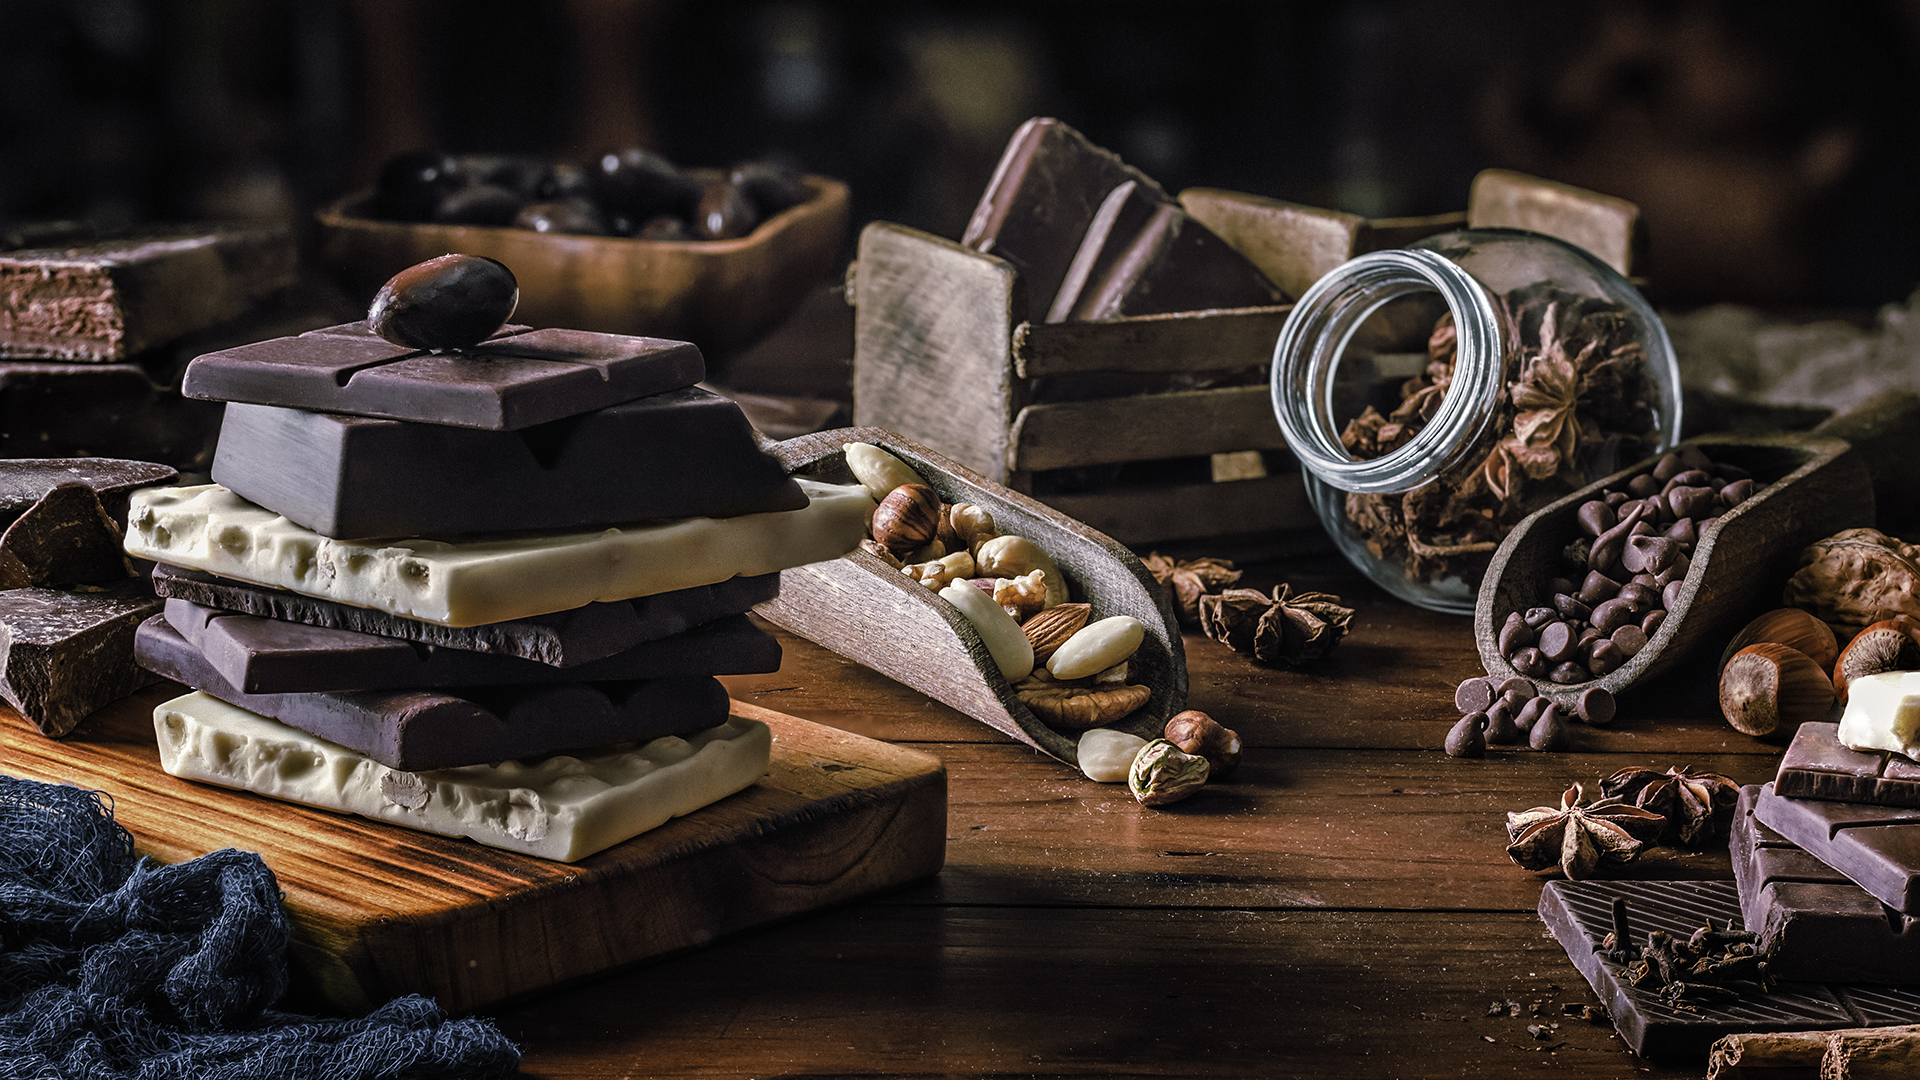 Un estudio vio que aquellos que consumían chocolate negro tenían síntomas depresivos significativamente más bajos en comparación con aquellos que rara vez comían chocolate negro (Getty)